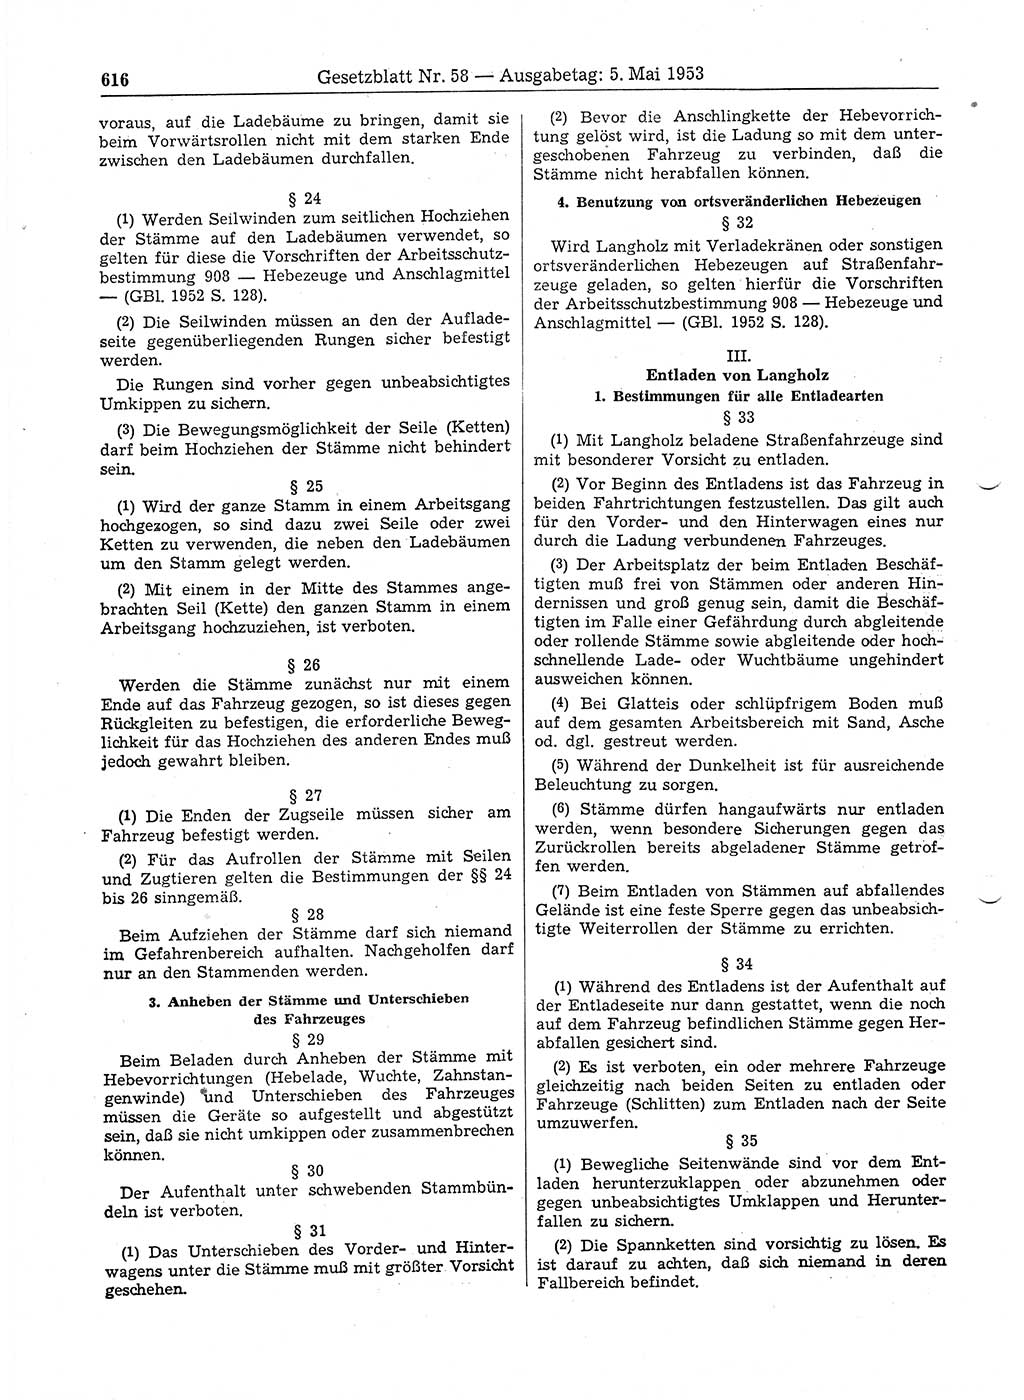 Gesetzblatt (GBl.) der Deutschen Demokratischen Republik (DDR) 1953, Seite 616 (GBl. DDR 1953, S. 616)